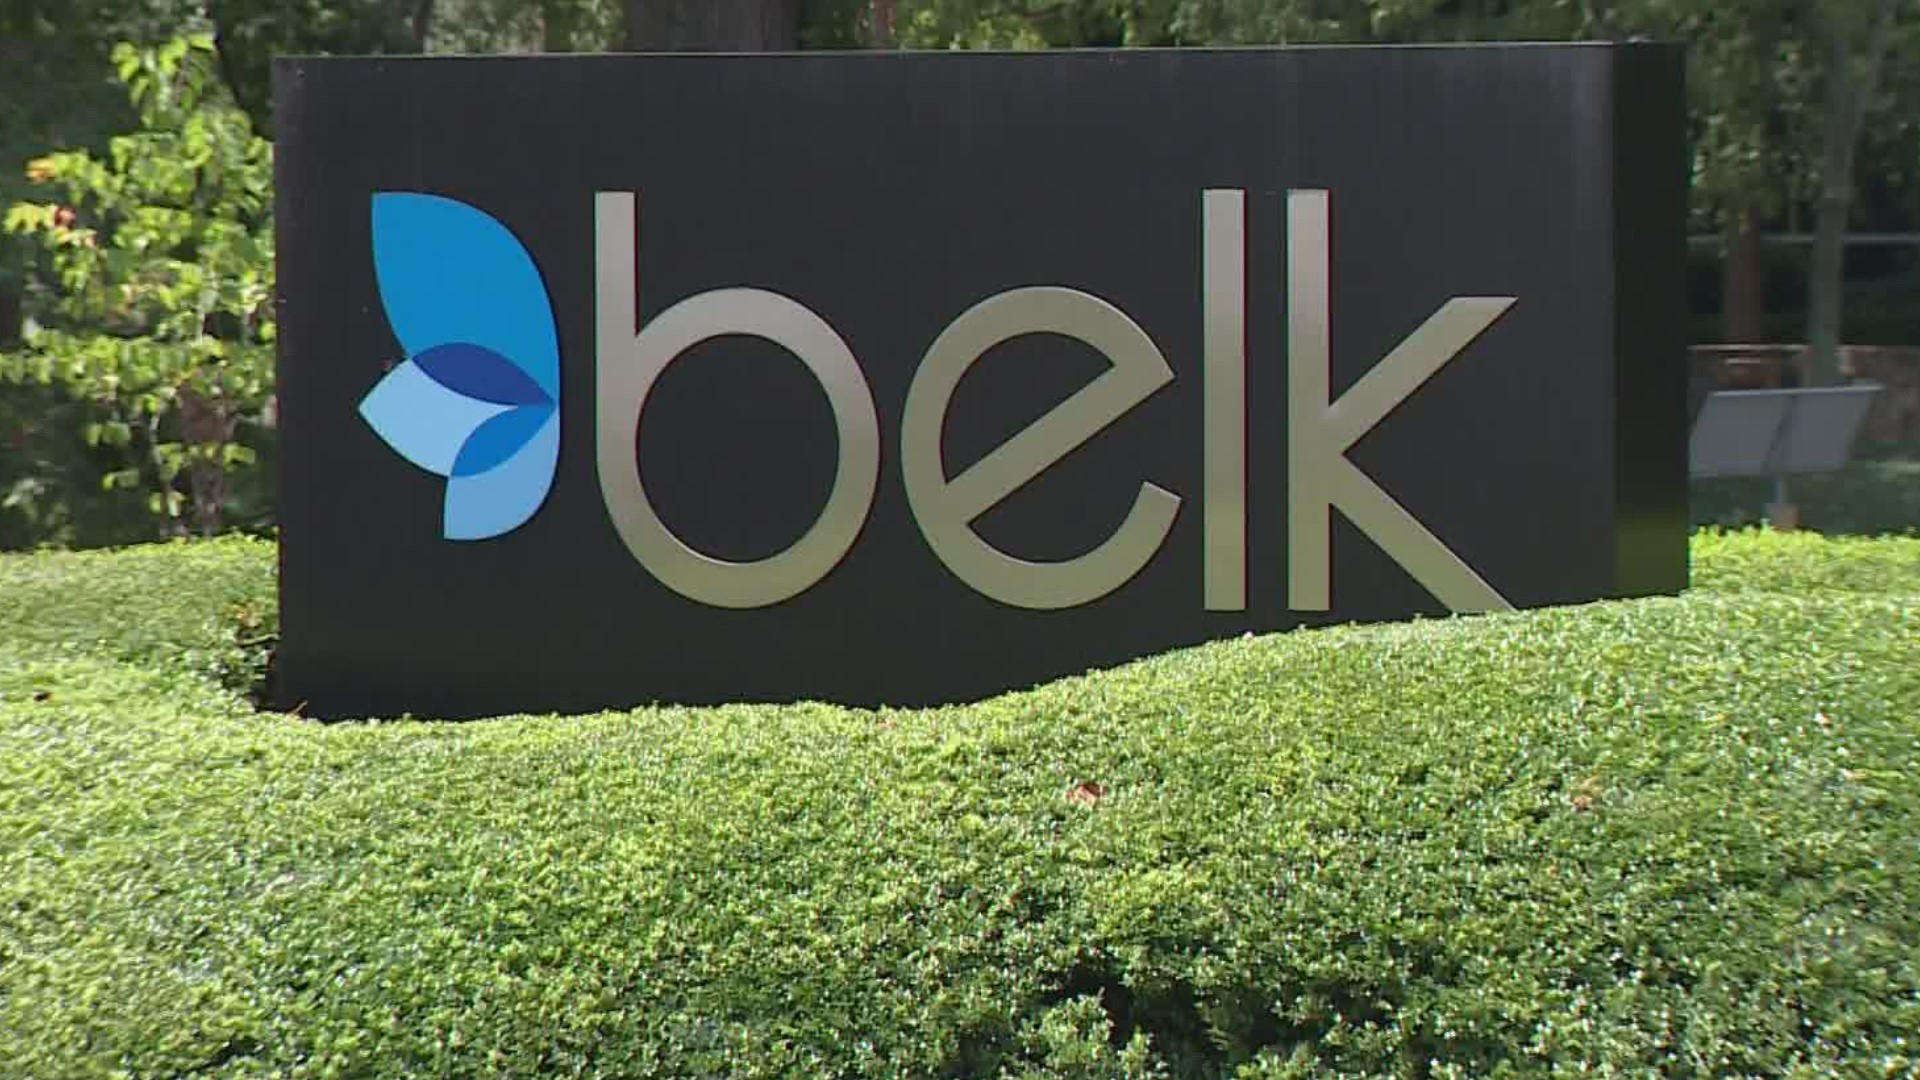 Belk is in debt by 450 million dollars.